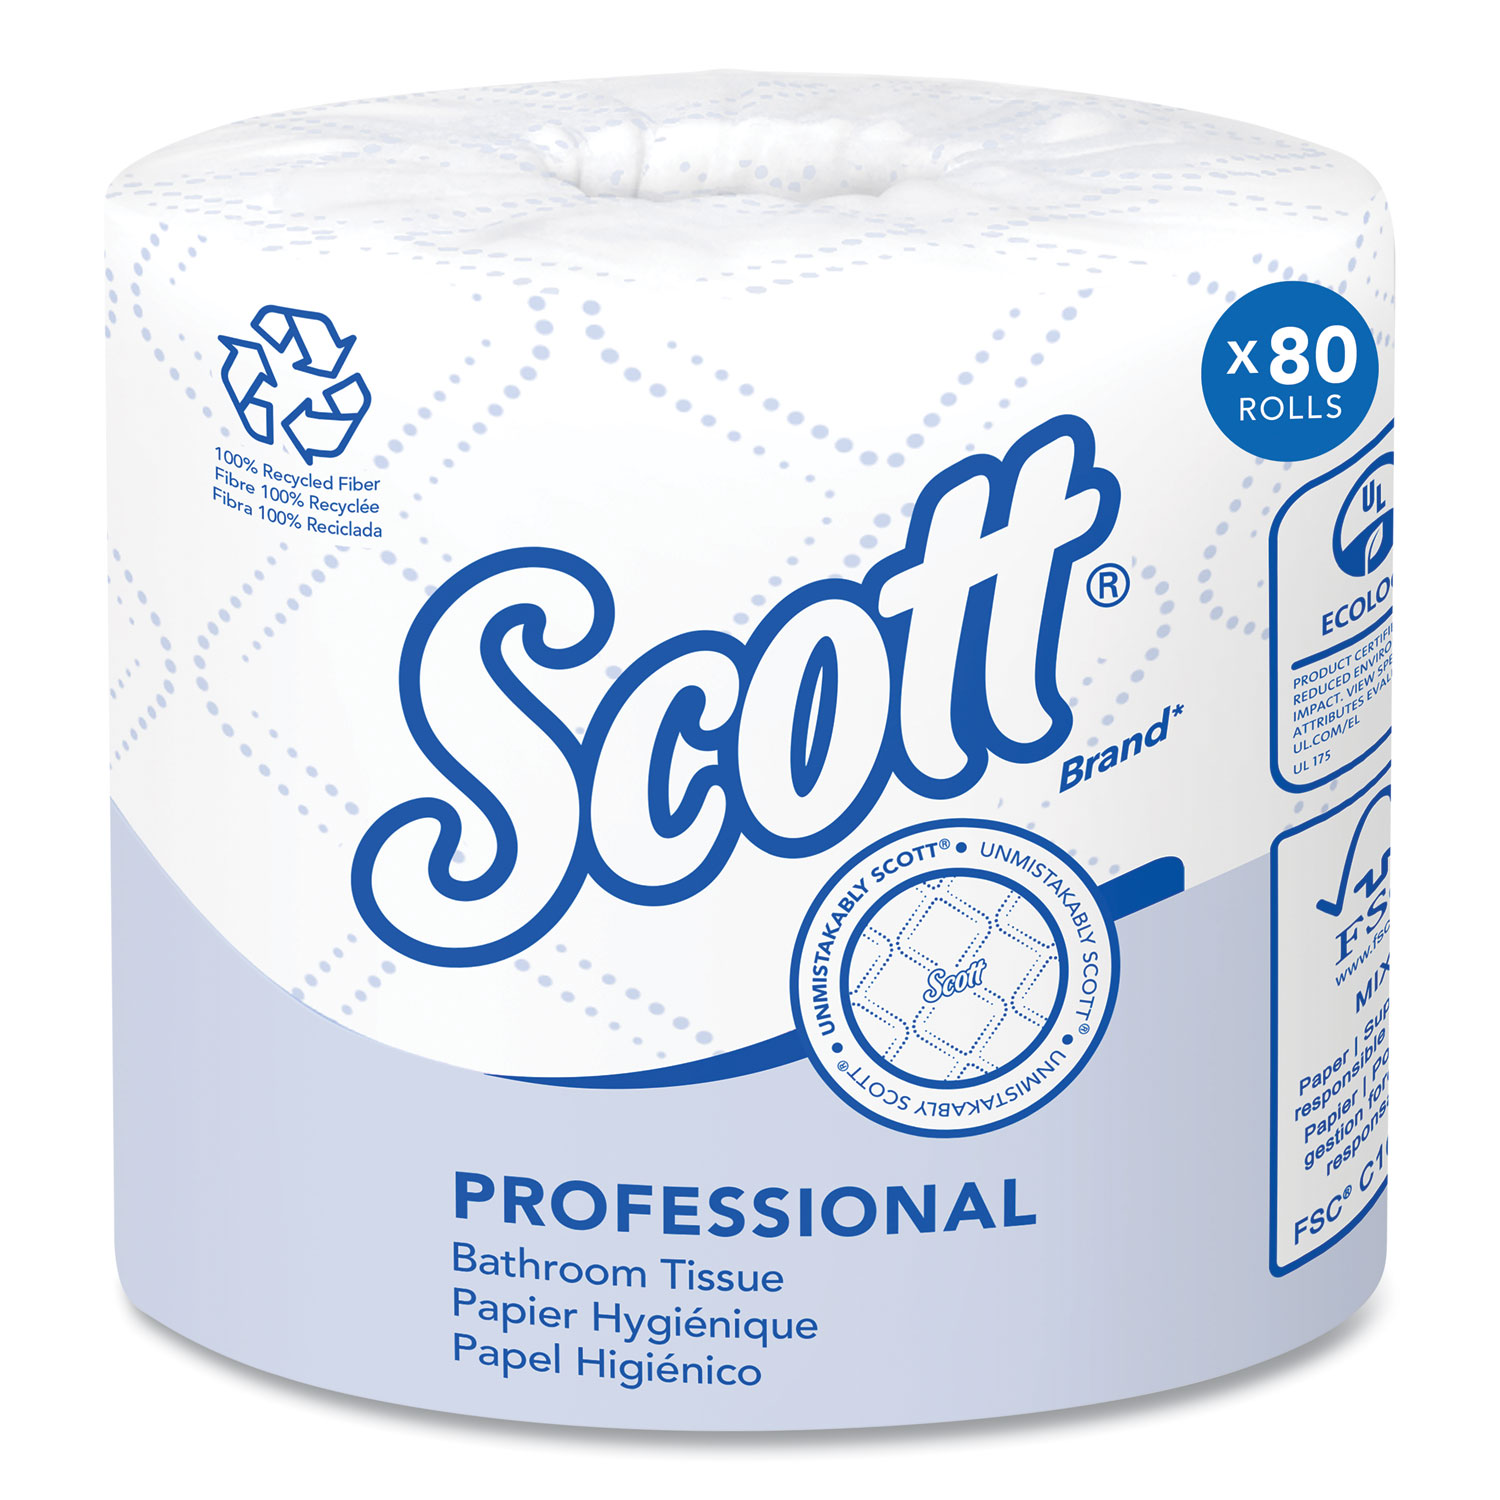 Basics 2-Ply Toilet Paper, 30 Rolls (5 Packs of 6), White